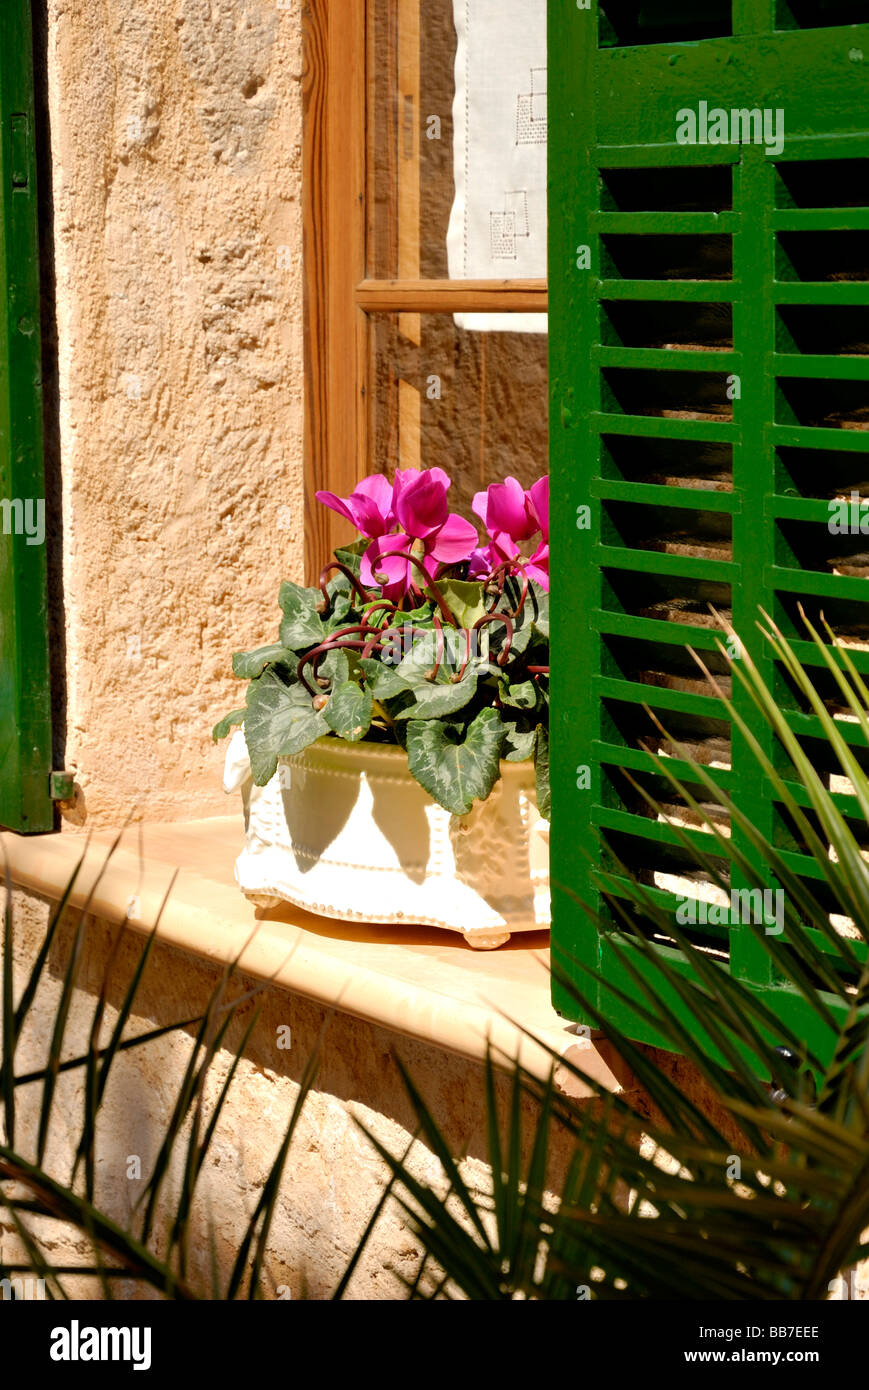 La fenêtre aux volets verts avec boîte de fleurs colorées à Alcudia, Majorque Banque D'Images